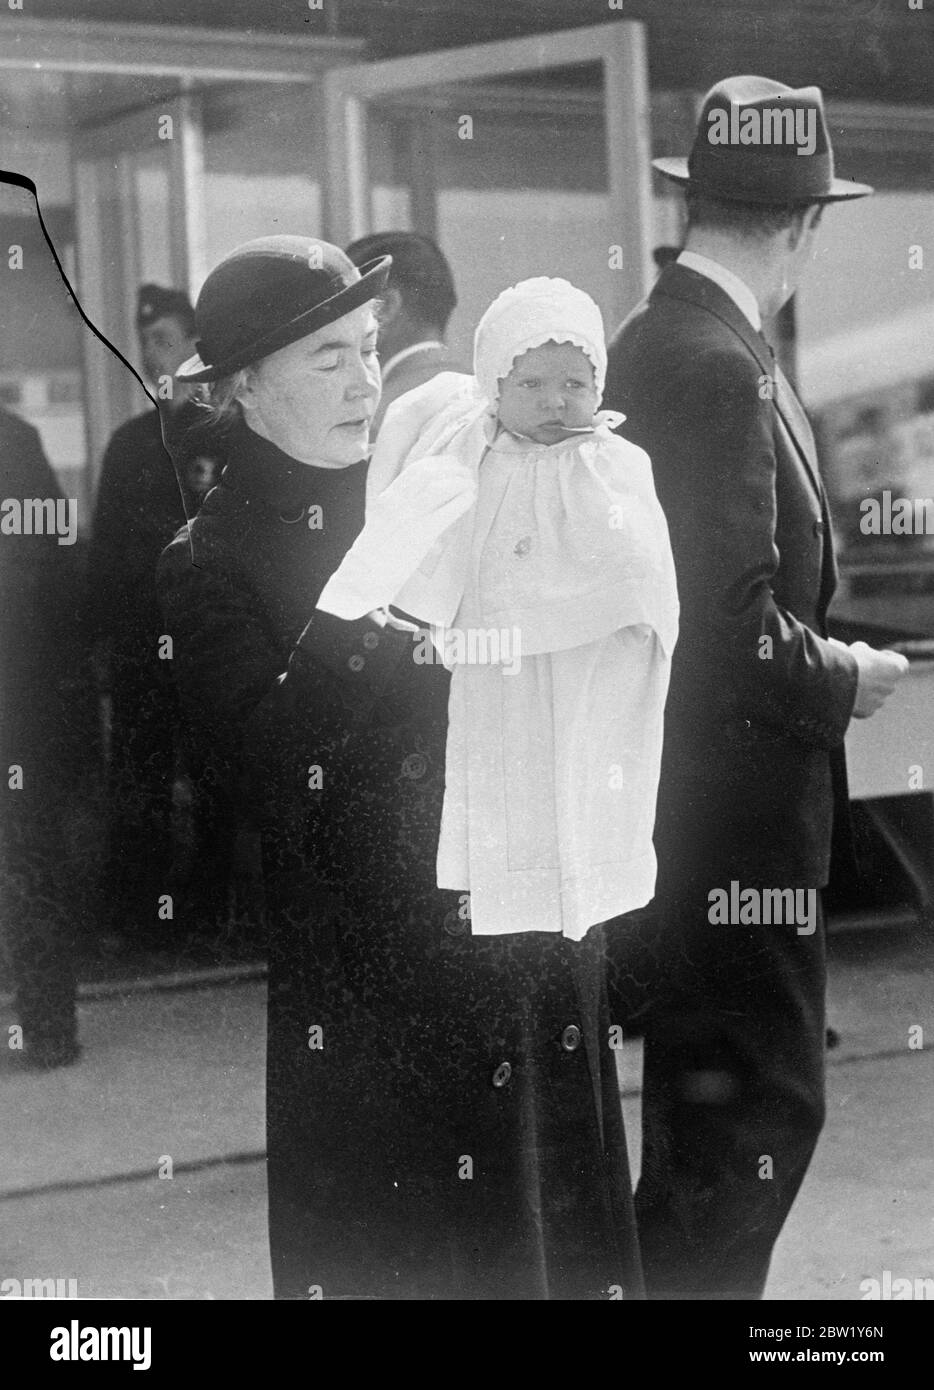 La princesse rend visite à ses grands-parents. La princesse Birgitta, fille du prince Gustaf Adolf de Suède et de la princesse Sibylla, a quitté Stockholm par F Berlin, où elle rend visite à ses grands-parents, le comte et comtesse de Coburg. Photos, petite princesse Birgitta alors qu'elle était sur le point de monter à bord de l'avion à Stockholm. 8 juin 1937 Banque D'Images